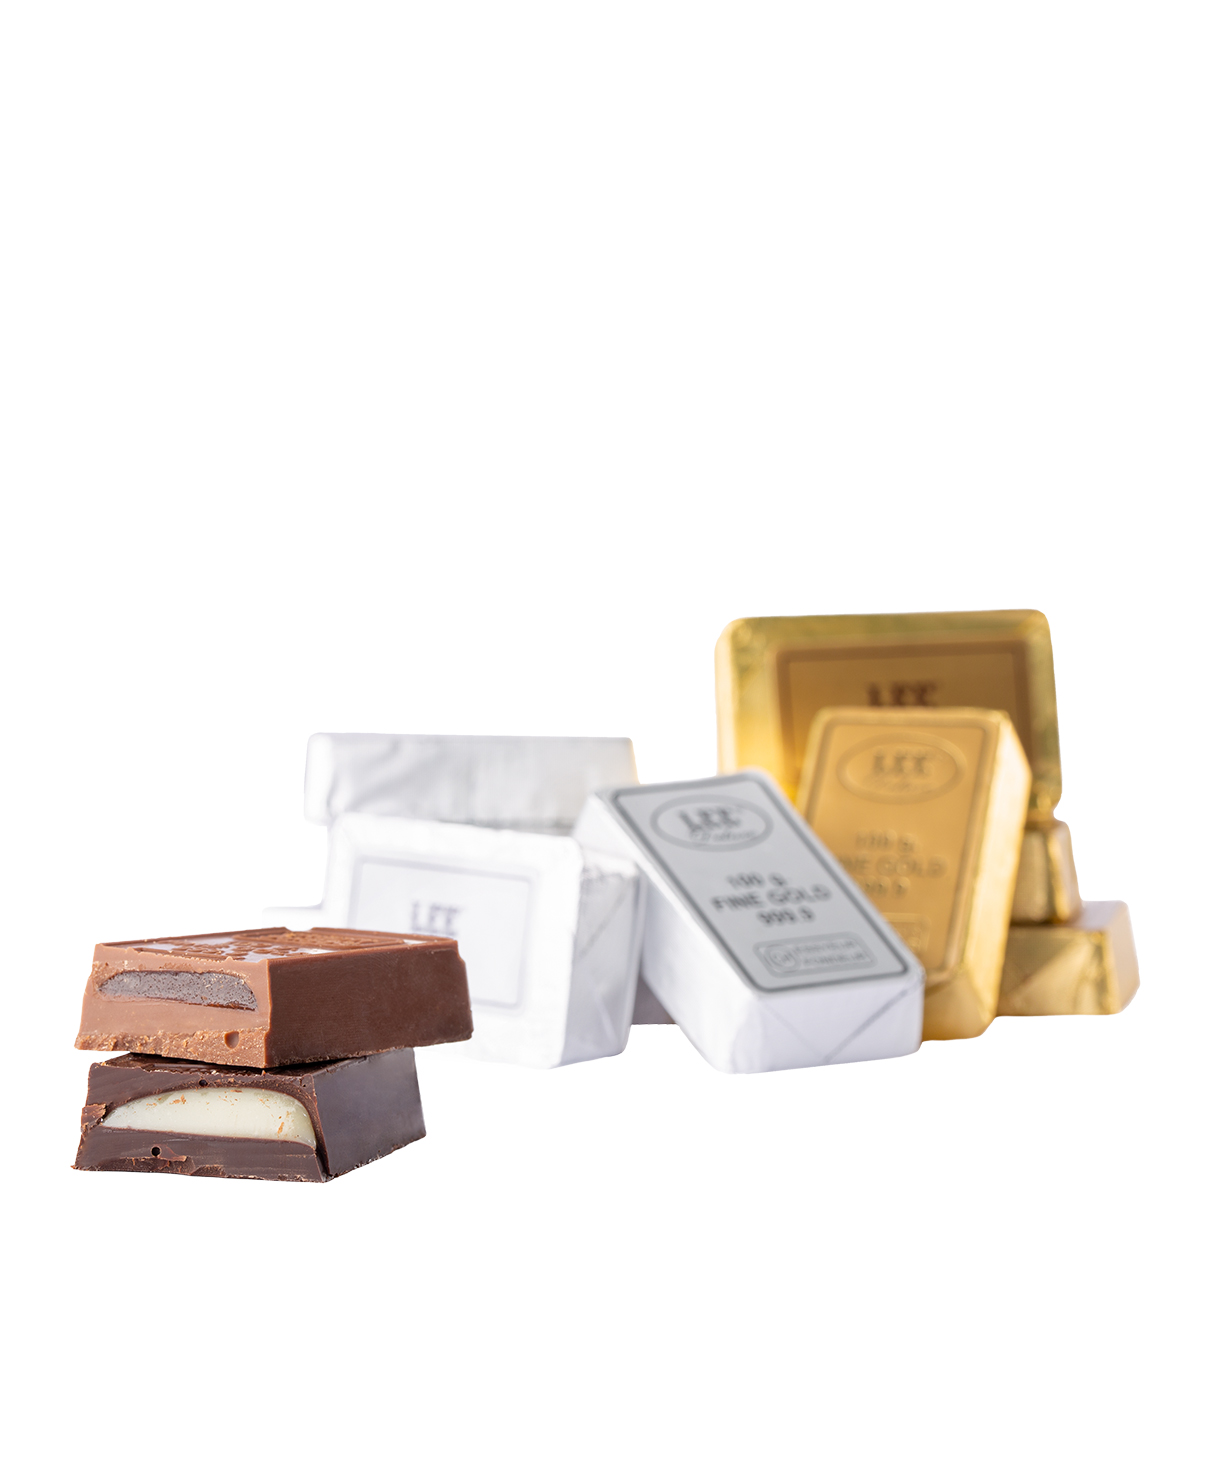 Коллекция `Lee Ounce Gold` шоколадных конфет 295 гр